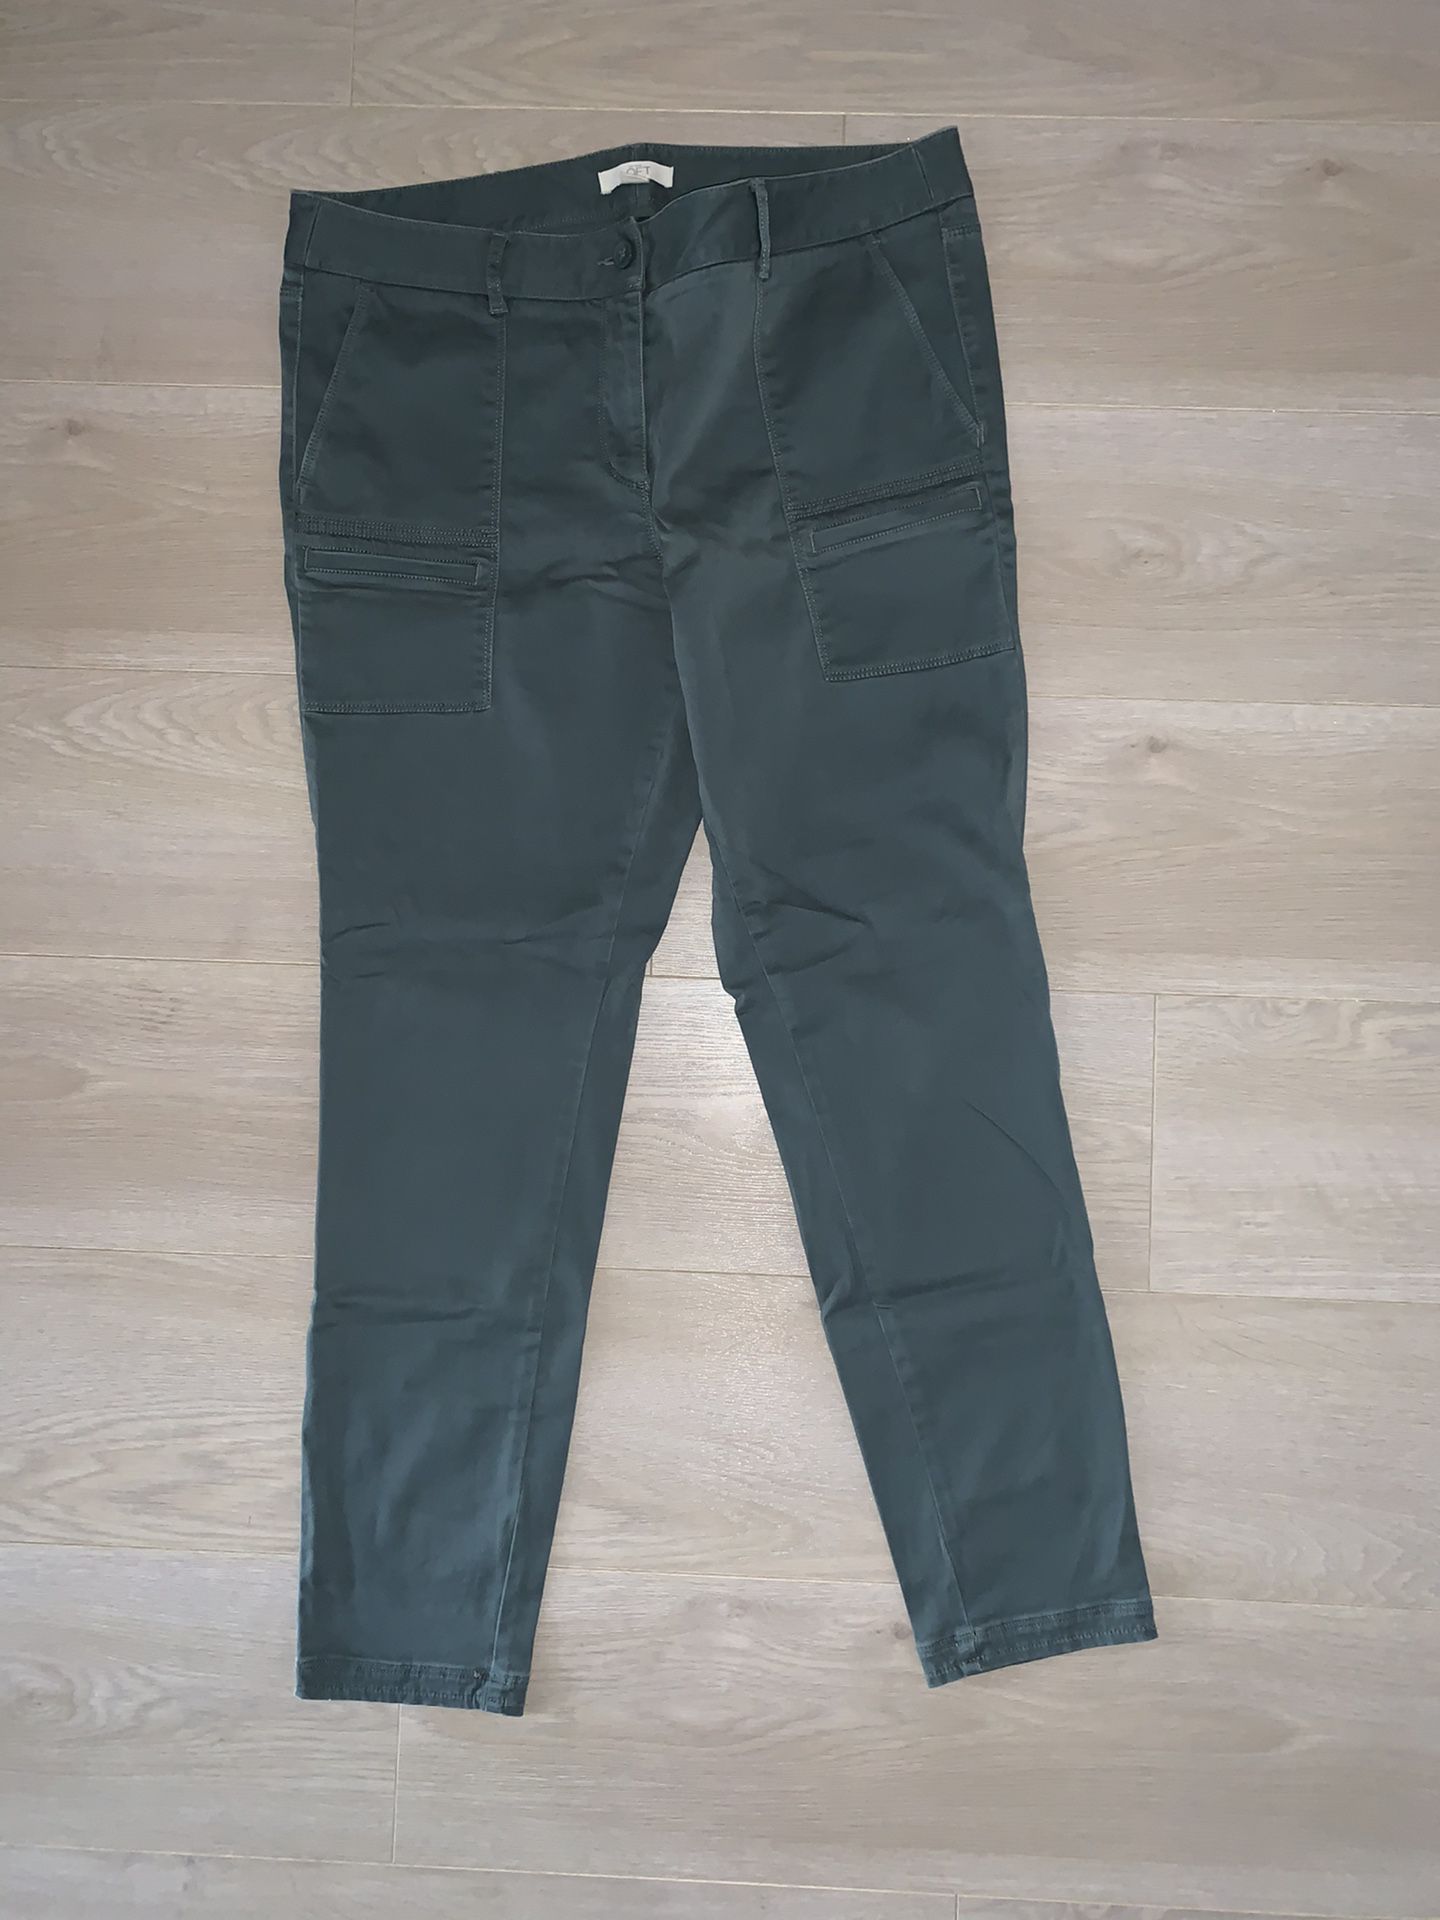 Loft Army green Jean leggings